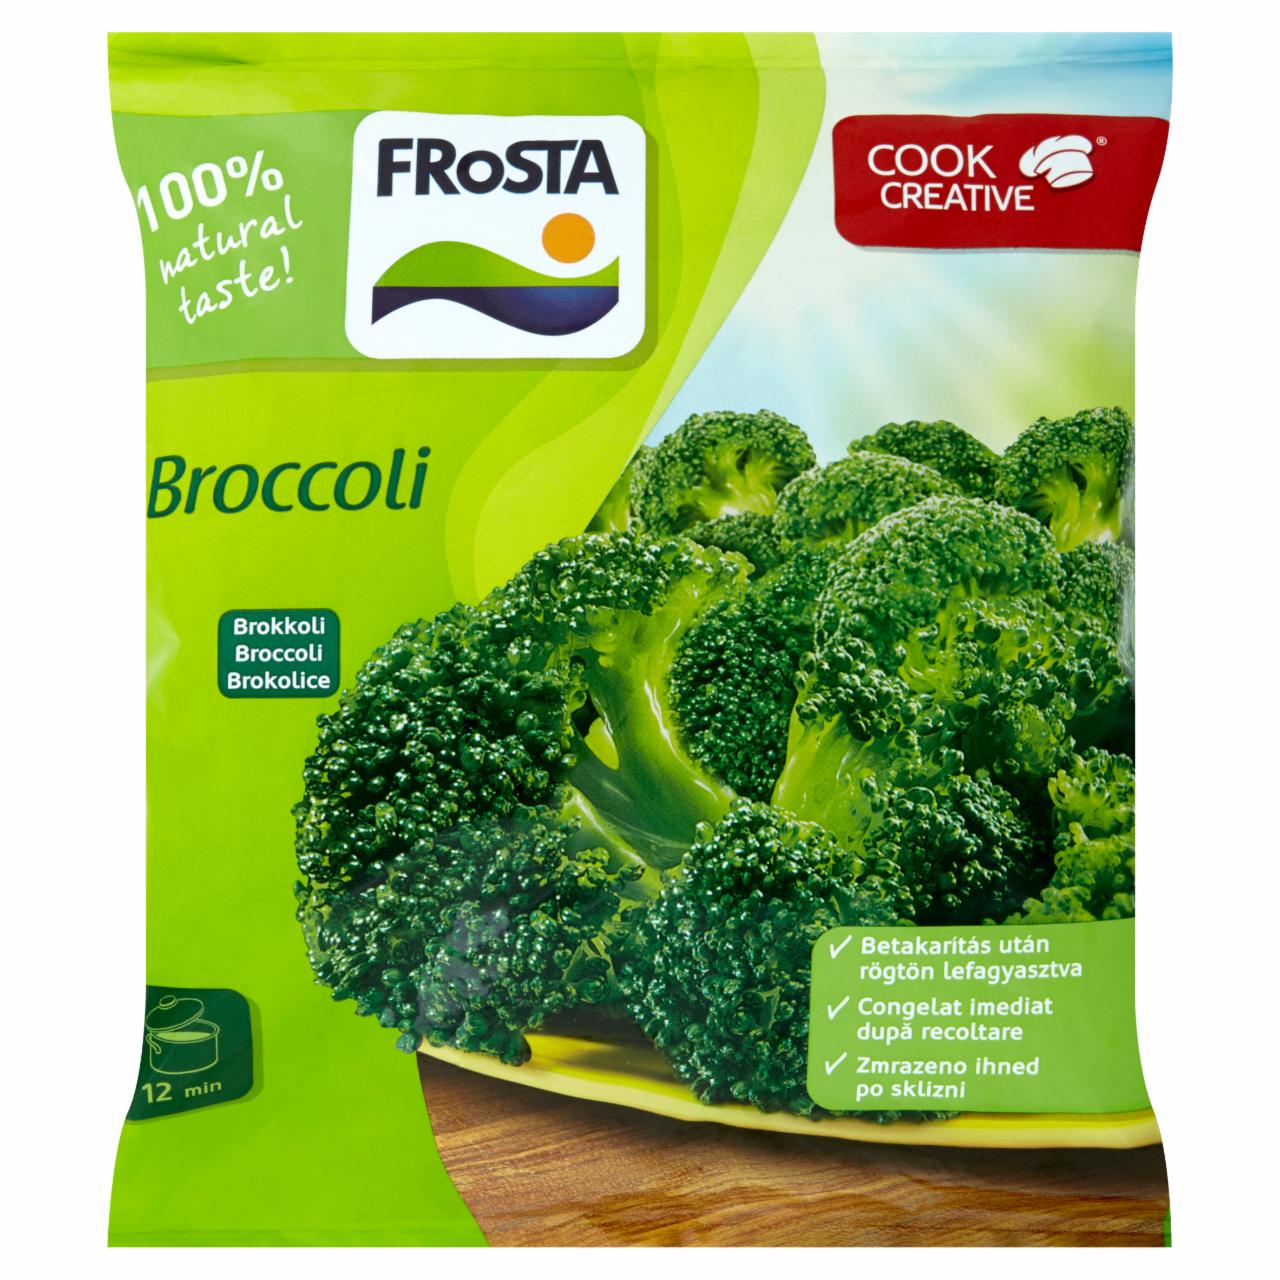 Képek - FRoSTA gyorsfagyasztott brokkoli 600 g